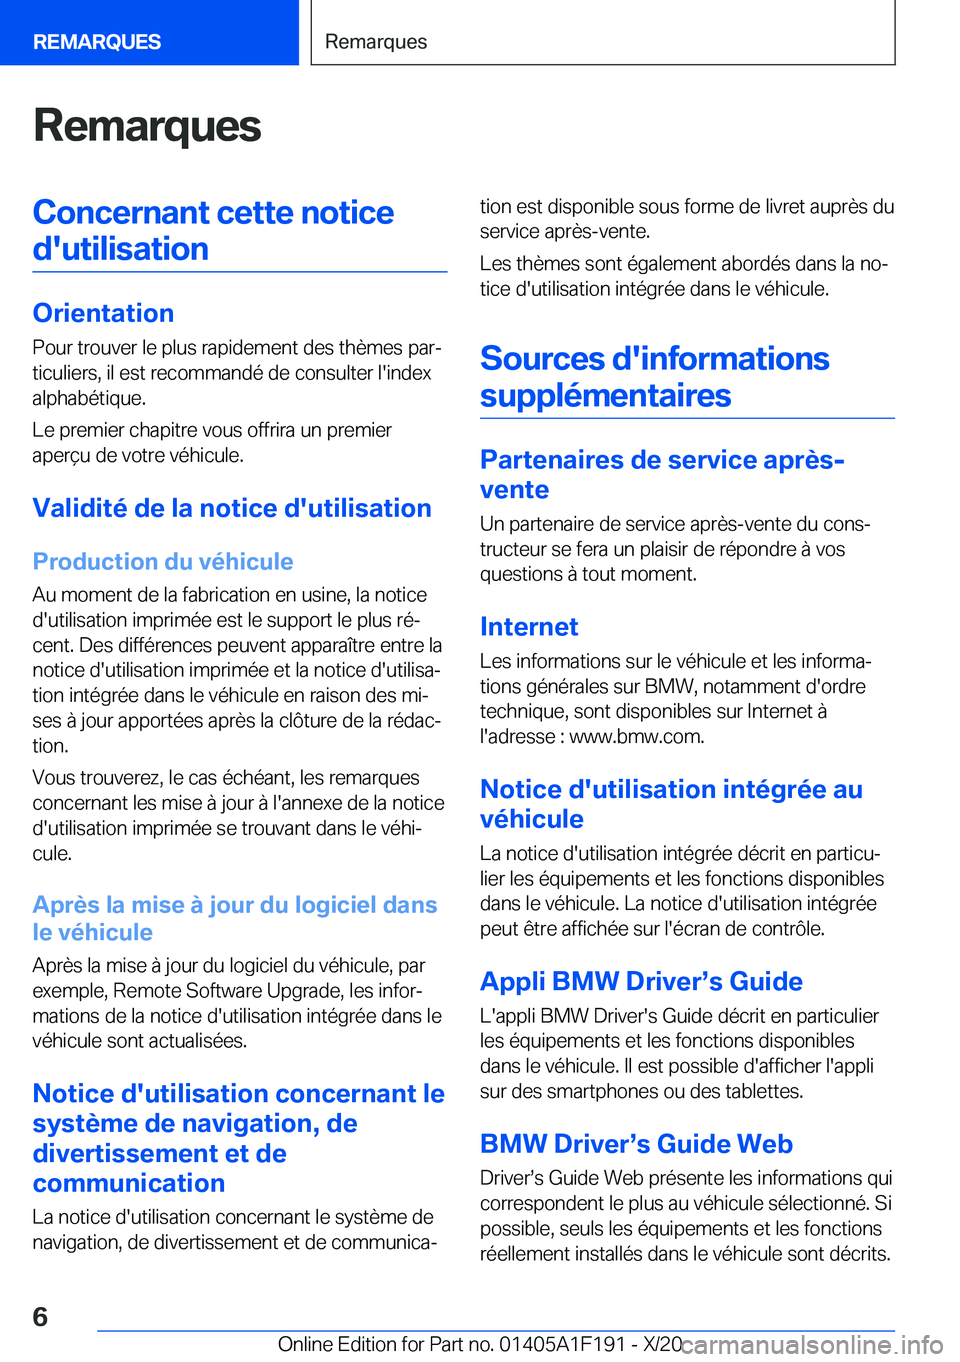 BMW M5 2021  Notices Demploi (in French) �R�e�m�a�r�q�u�e�s�C�o�n�c�e�r�n�a�n�t��c�e�t�t�e��n�o�t�i�c�e�d�'�u�t�i�l�i�s�a�t�i�o�n
�O�r�i�e�n�t�a�t�i�o�n �P�o�u�r��t�r�o�u�v�e�r��l�e��p�l�u�s��r�a�p�i�d�e�m�e�n�t��d�e�s��t�h�è�m�